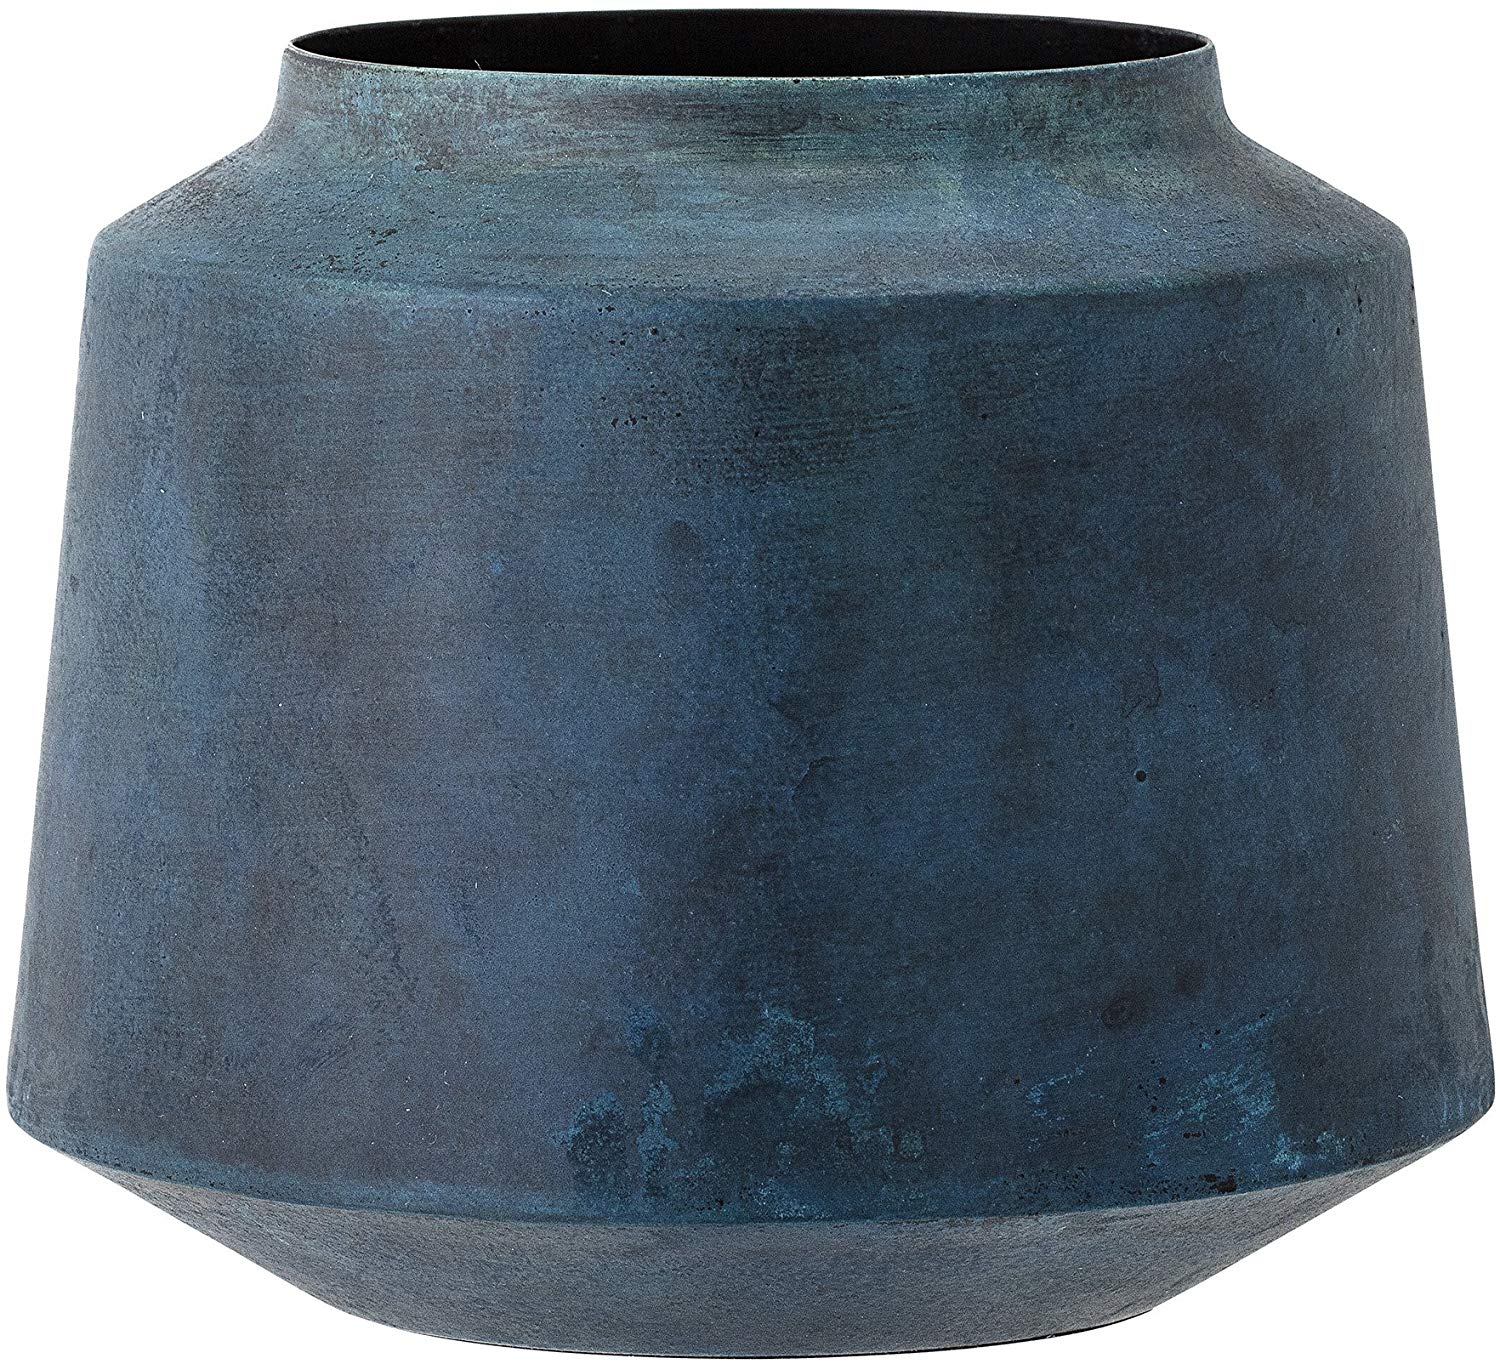 Bloomingville Vase Height 15 Cm Metal, Blue